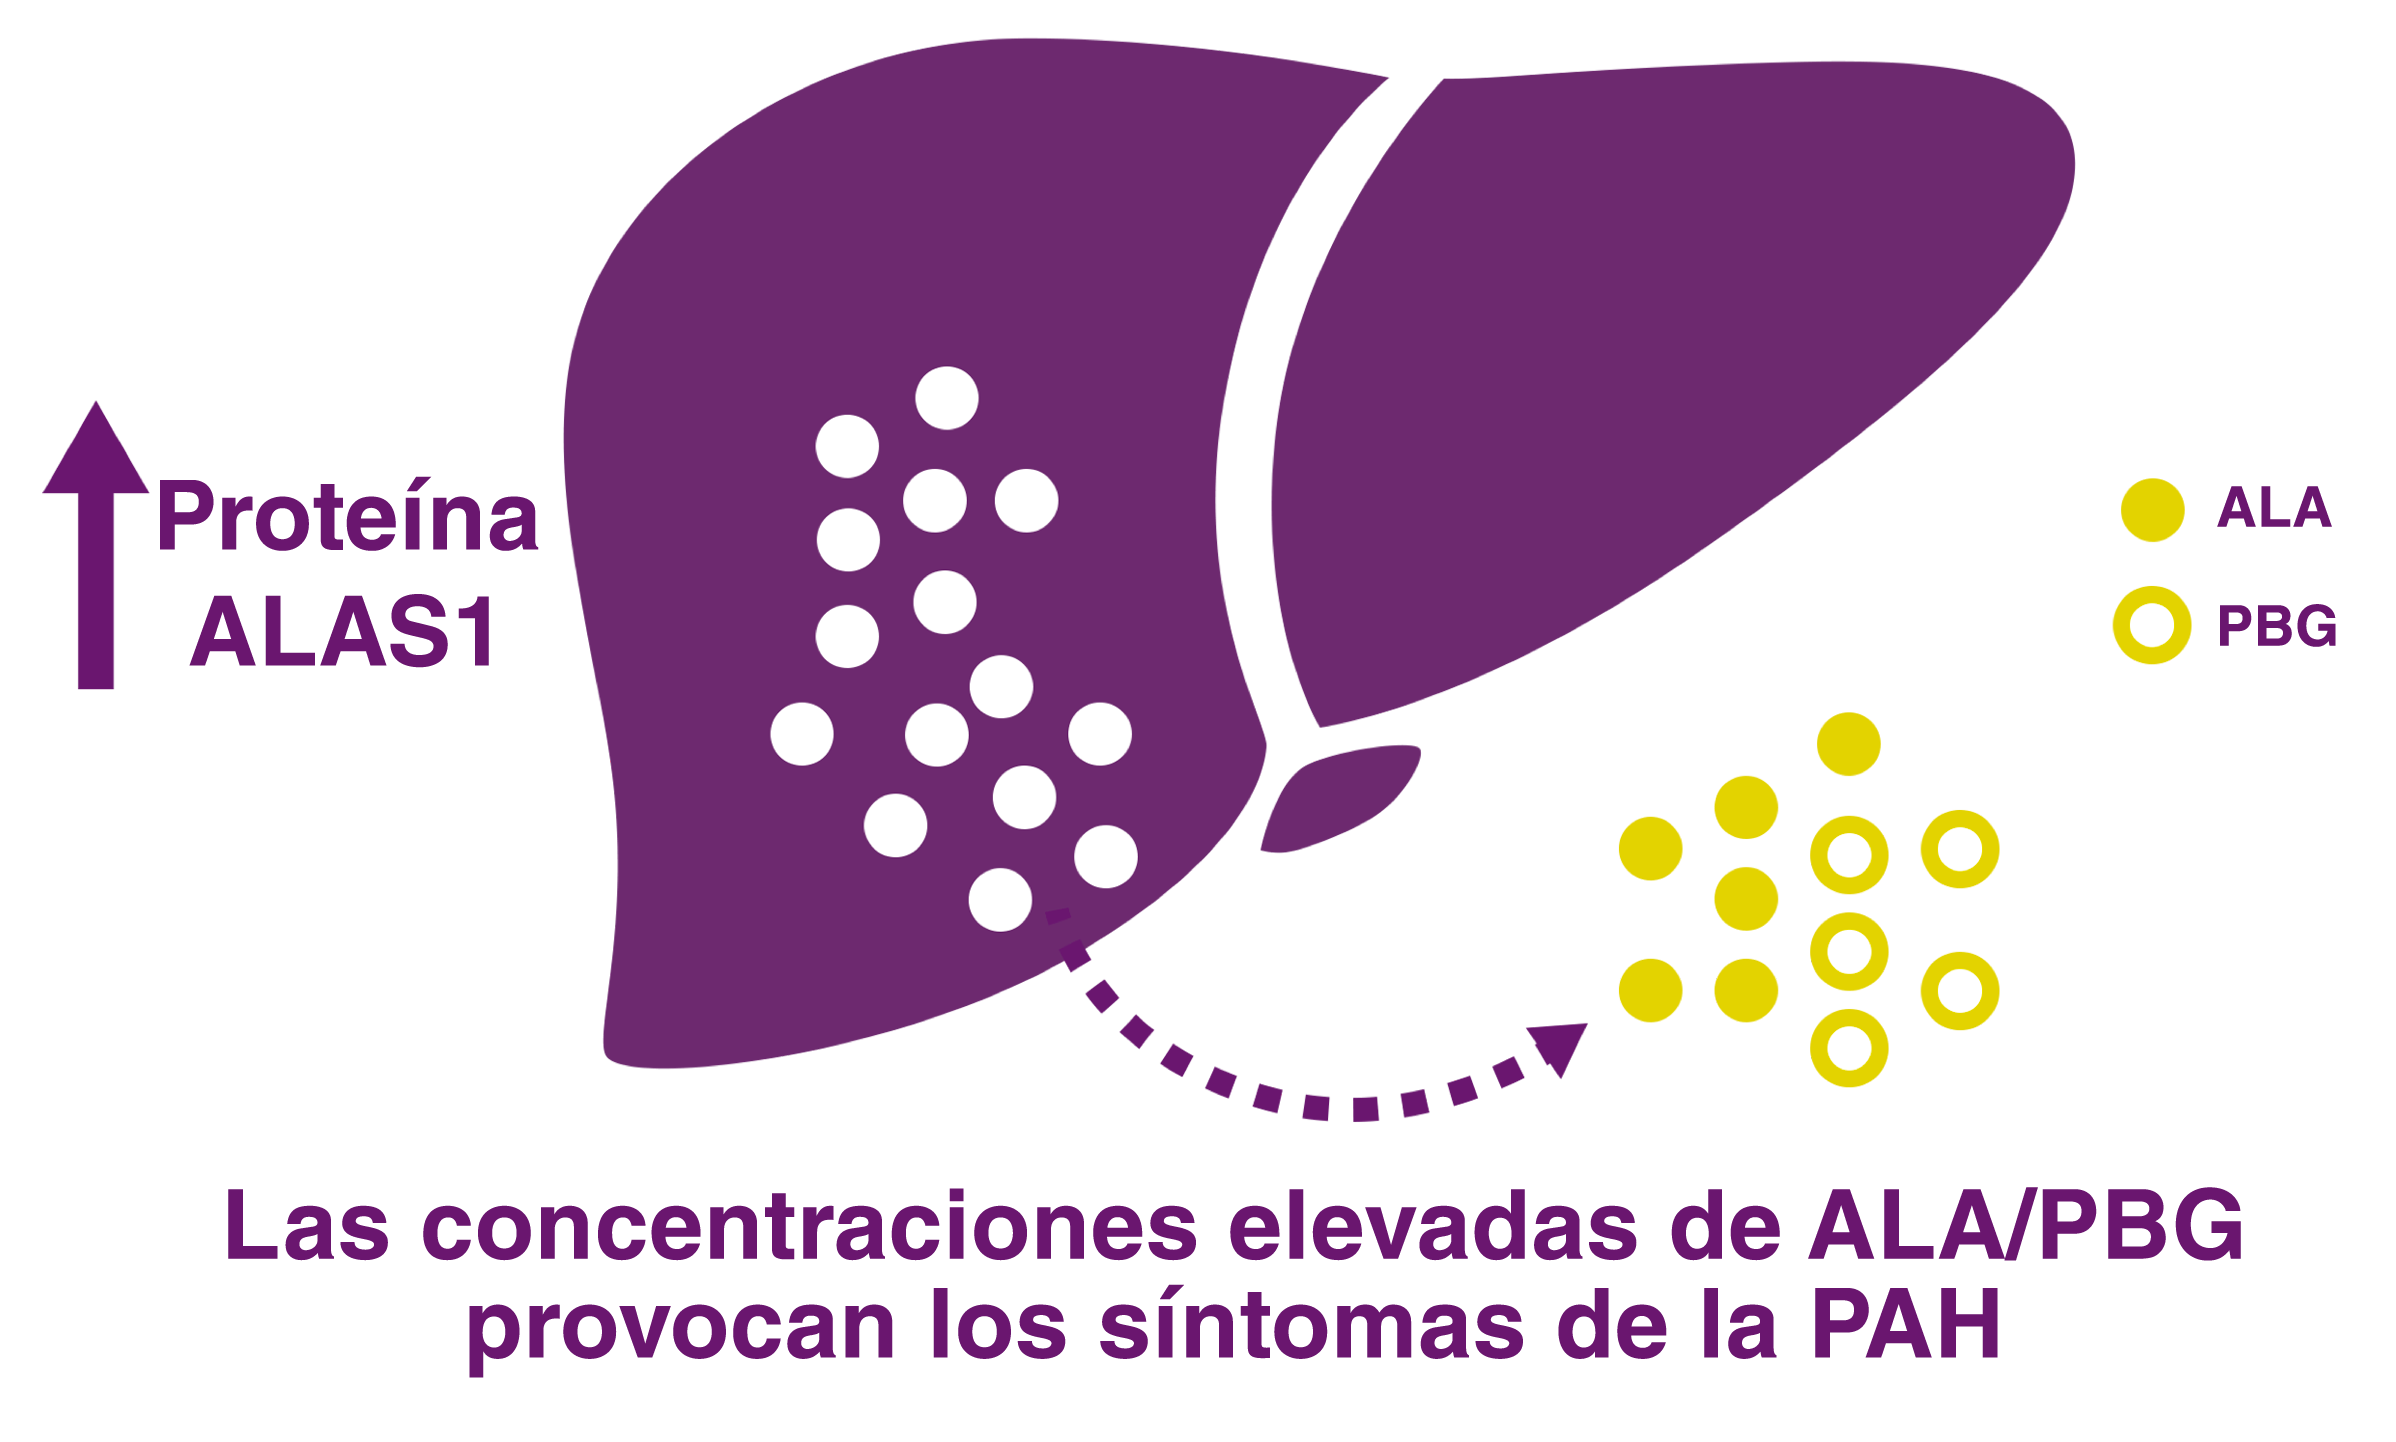 La regulación al alza del ALAS1 causa la acumulación neurotóxica de ALA y PBG